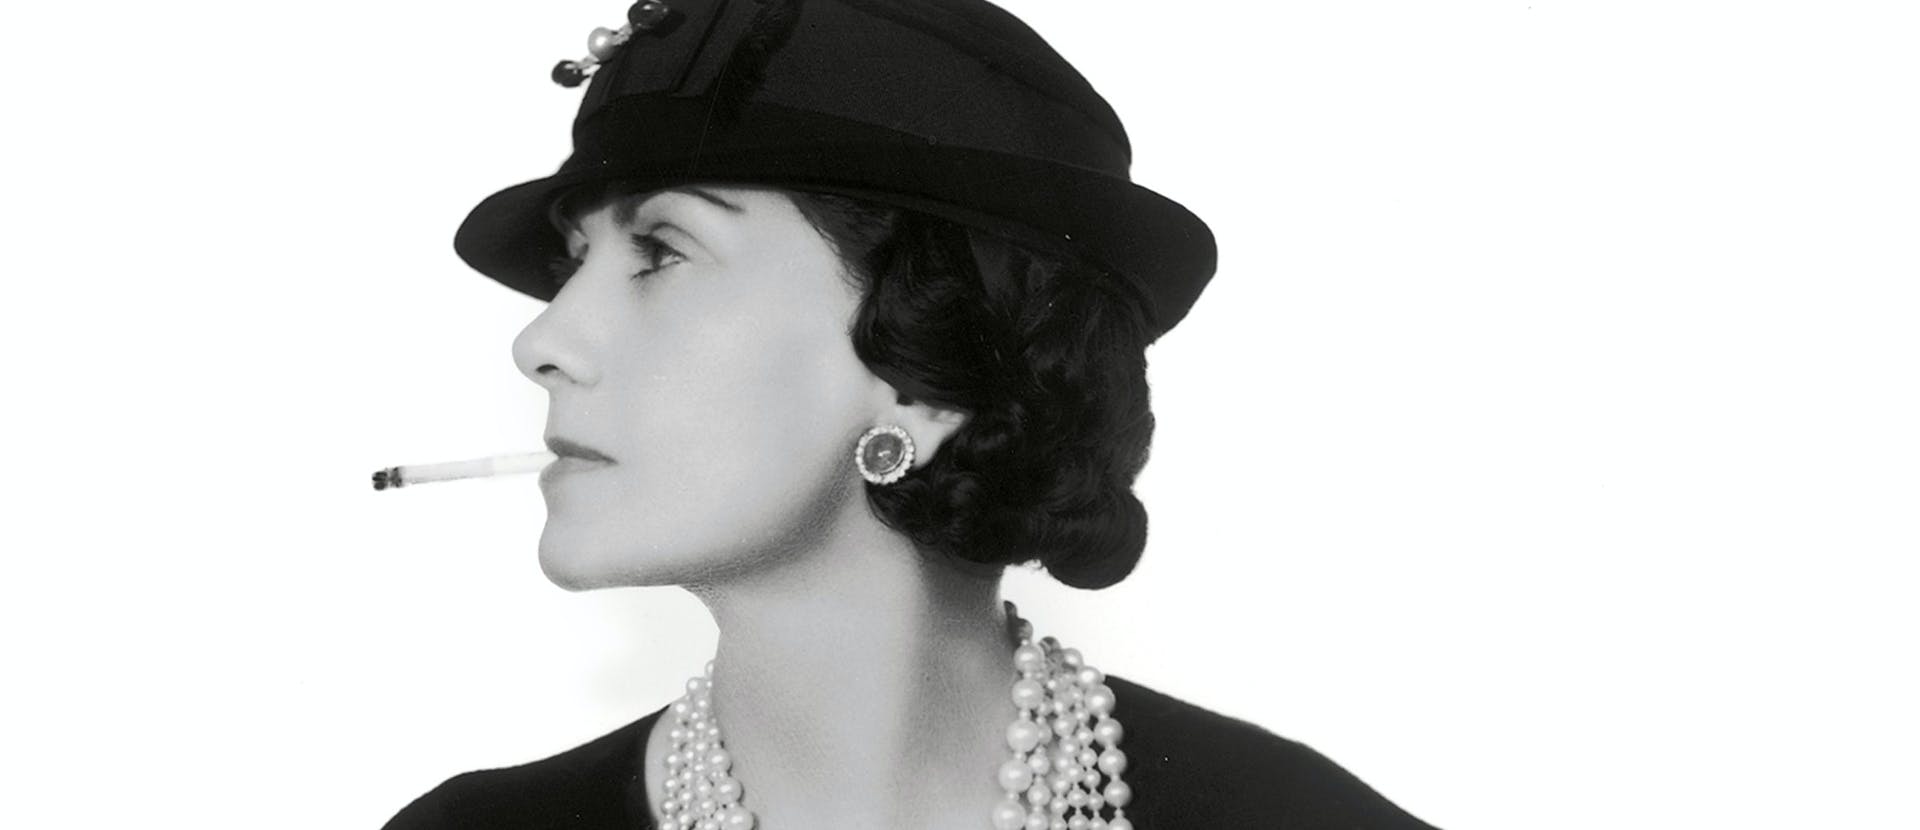 Coco Chanel: A glimpse Into the Marketing Journey